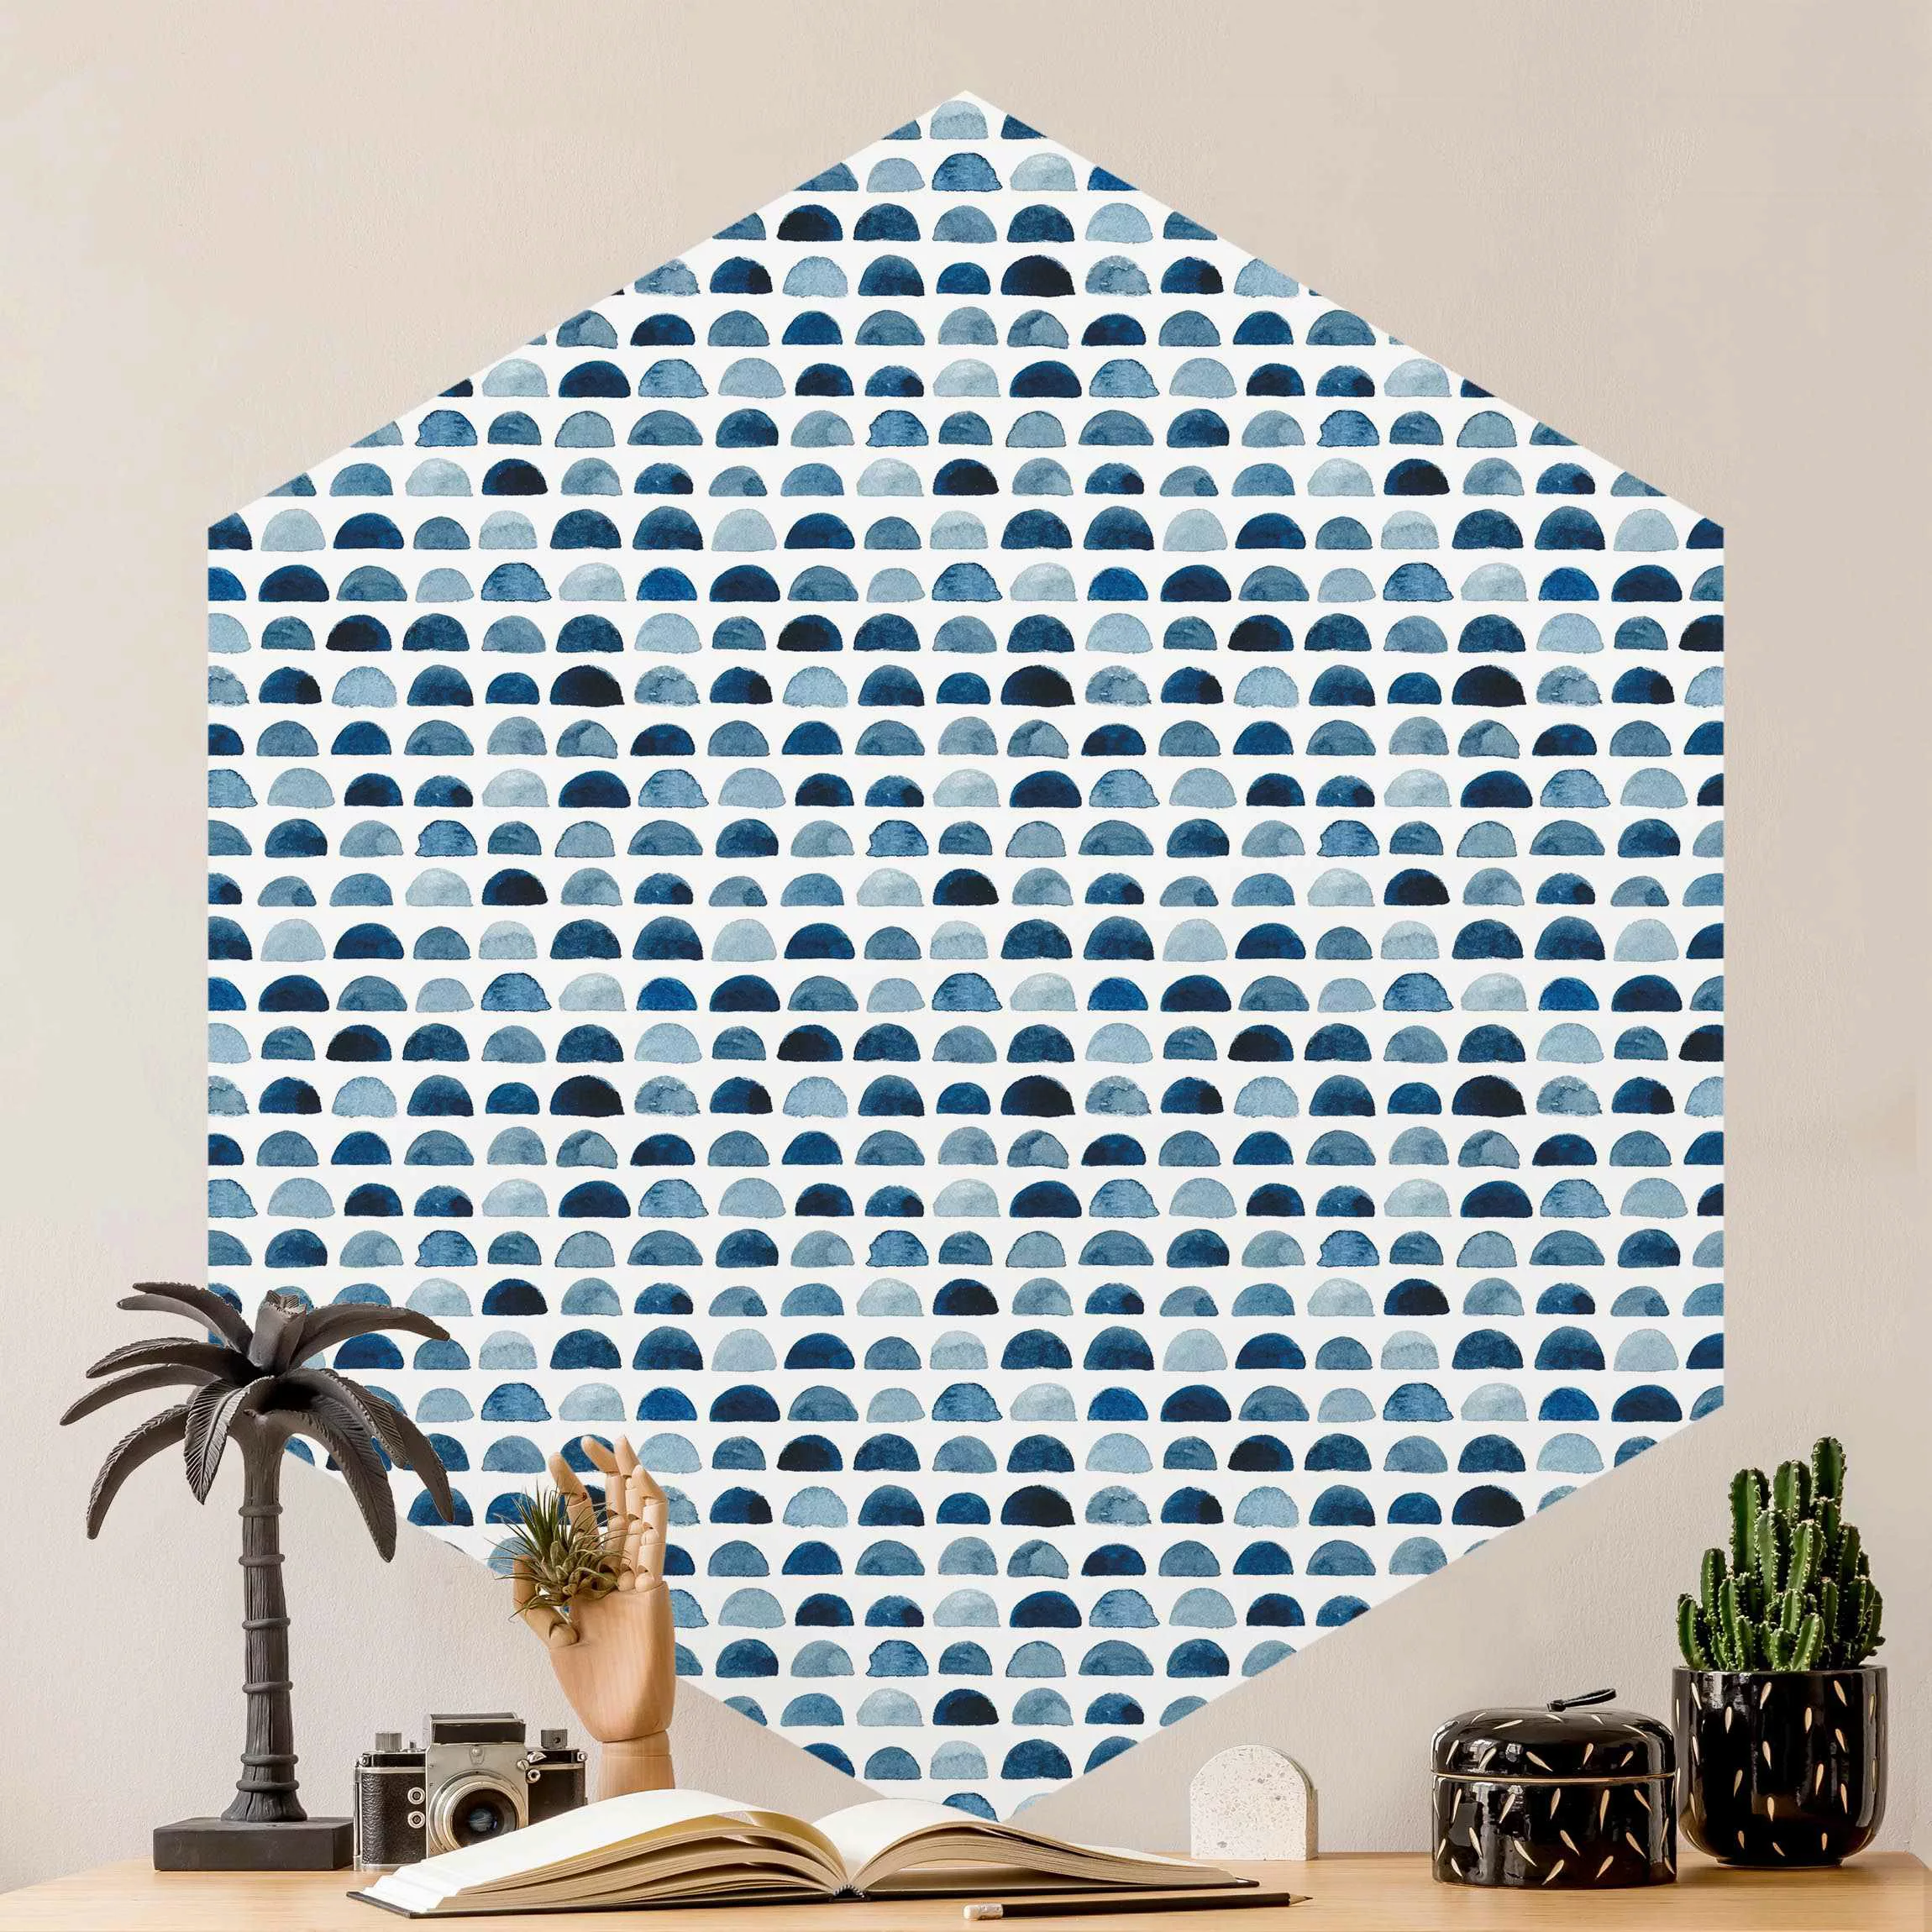 Hexagon Mustertapete selbstklebend Aquarell Halbkreise in Indigo günstig online kaufen